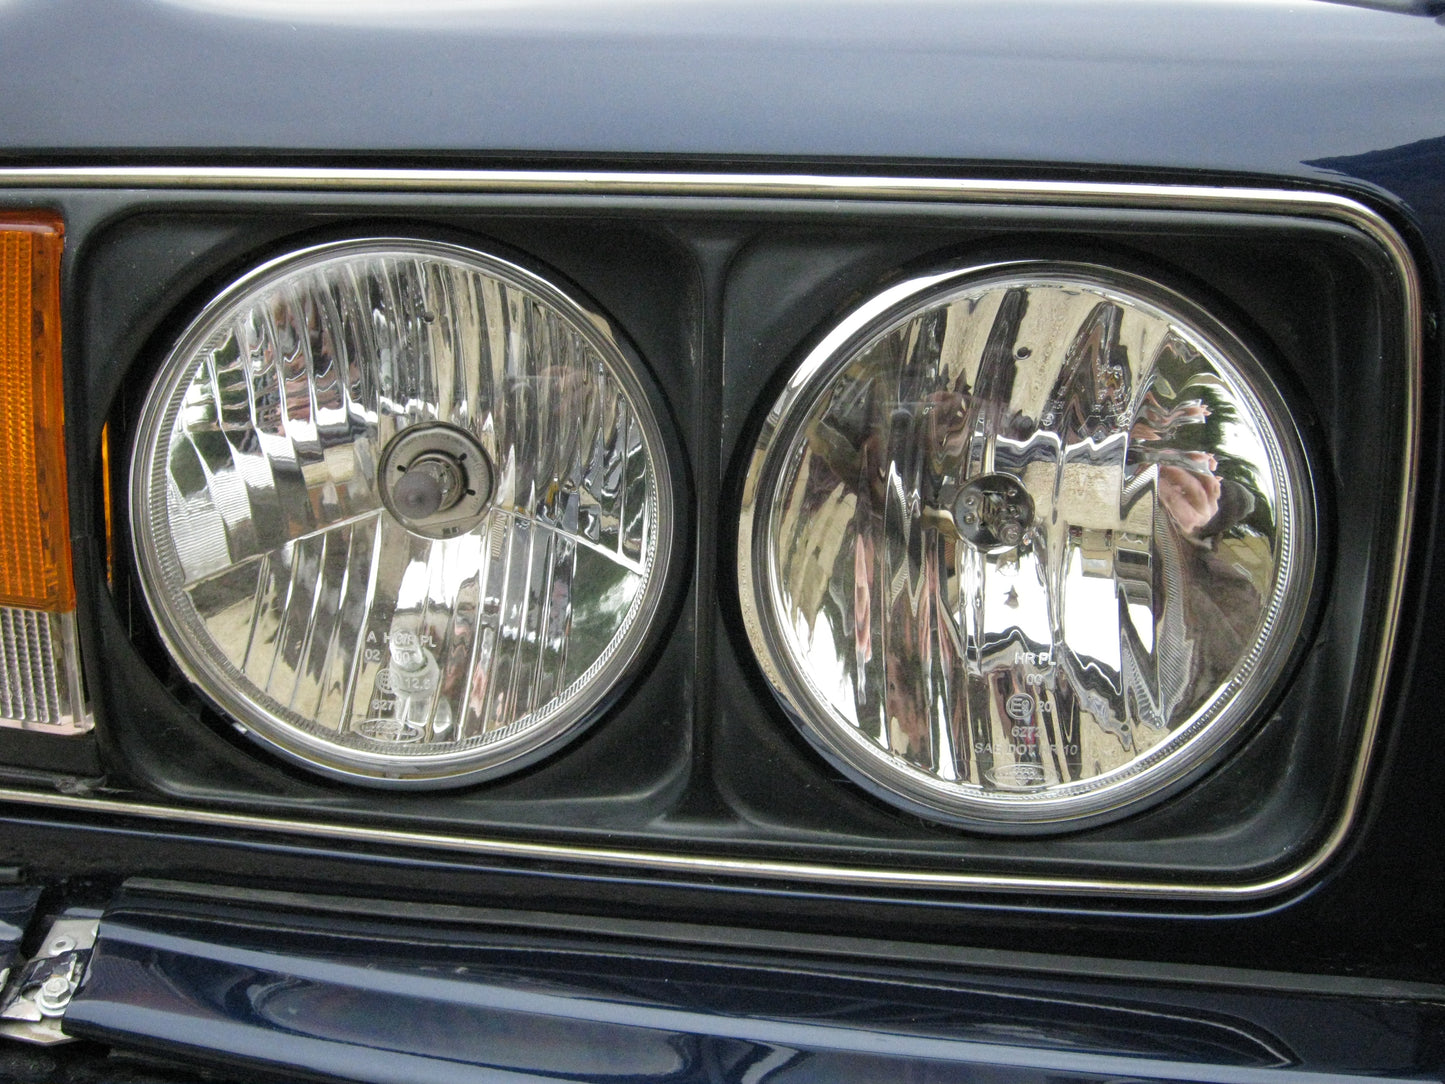 Full 4 Headlight Upgrade Kit for Bentley Turbo R